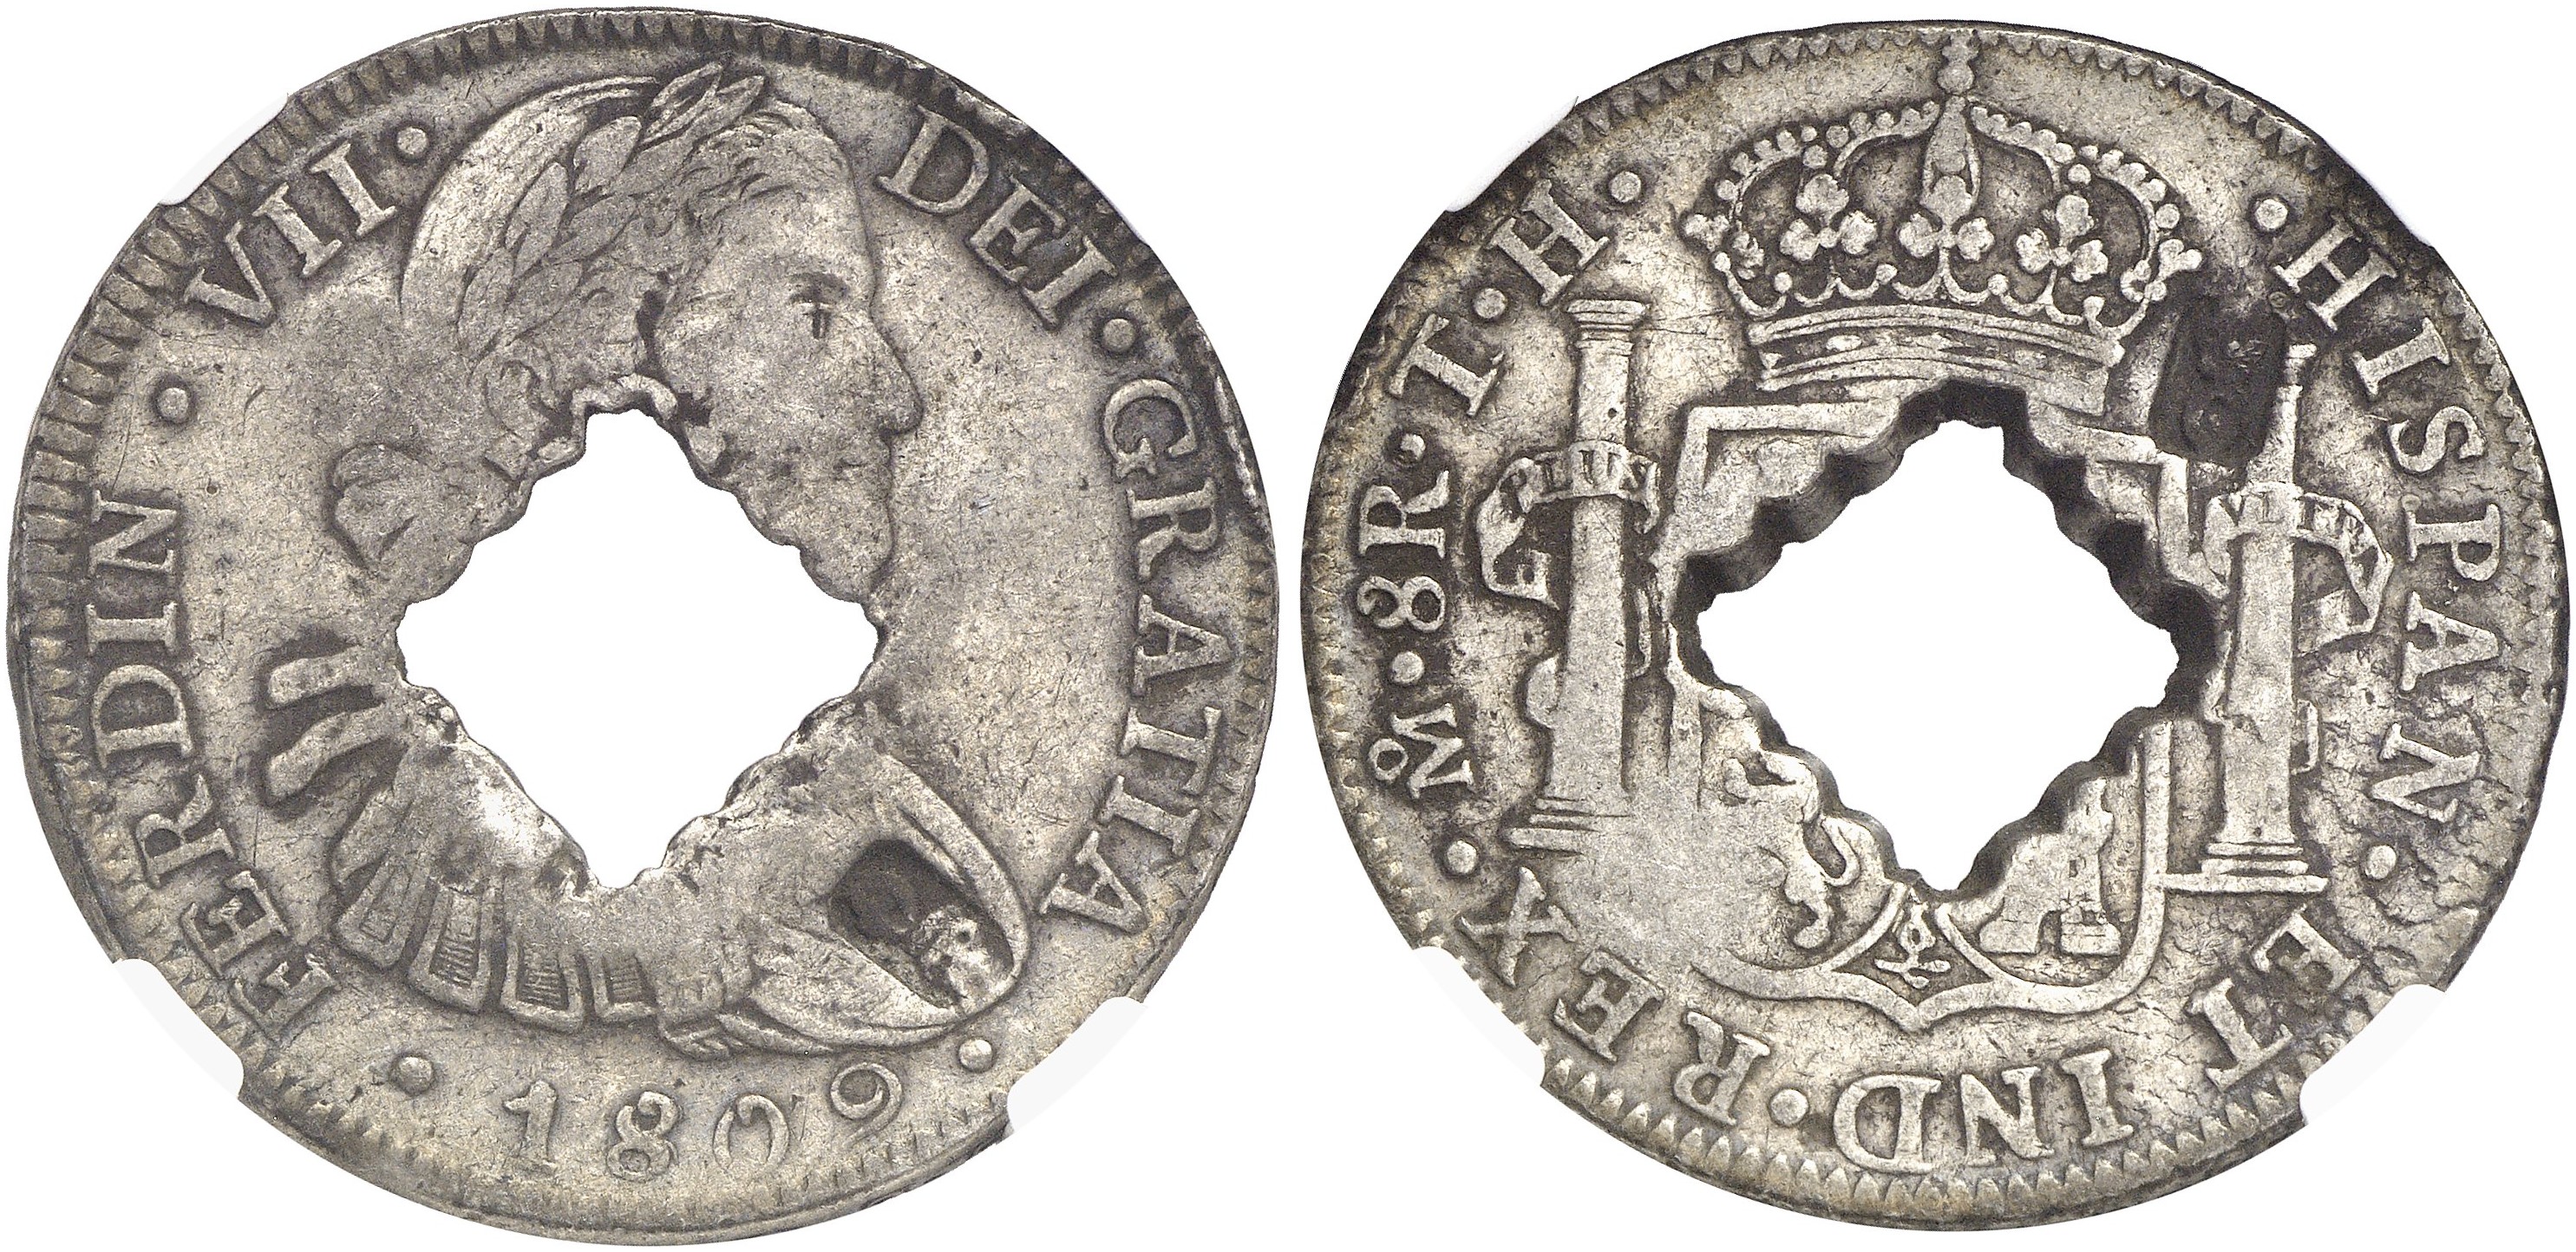 Unit 1 money. Старинные монеты Испании. Монета Испании 1816 серебро. Шиллинг (денежная единица) средневековые монеты. Ливр (денежная единица).